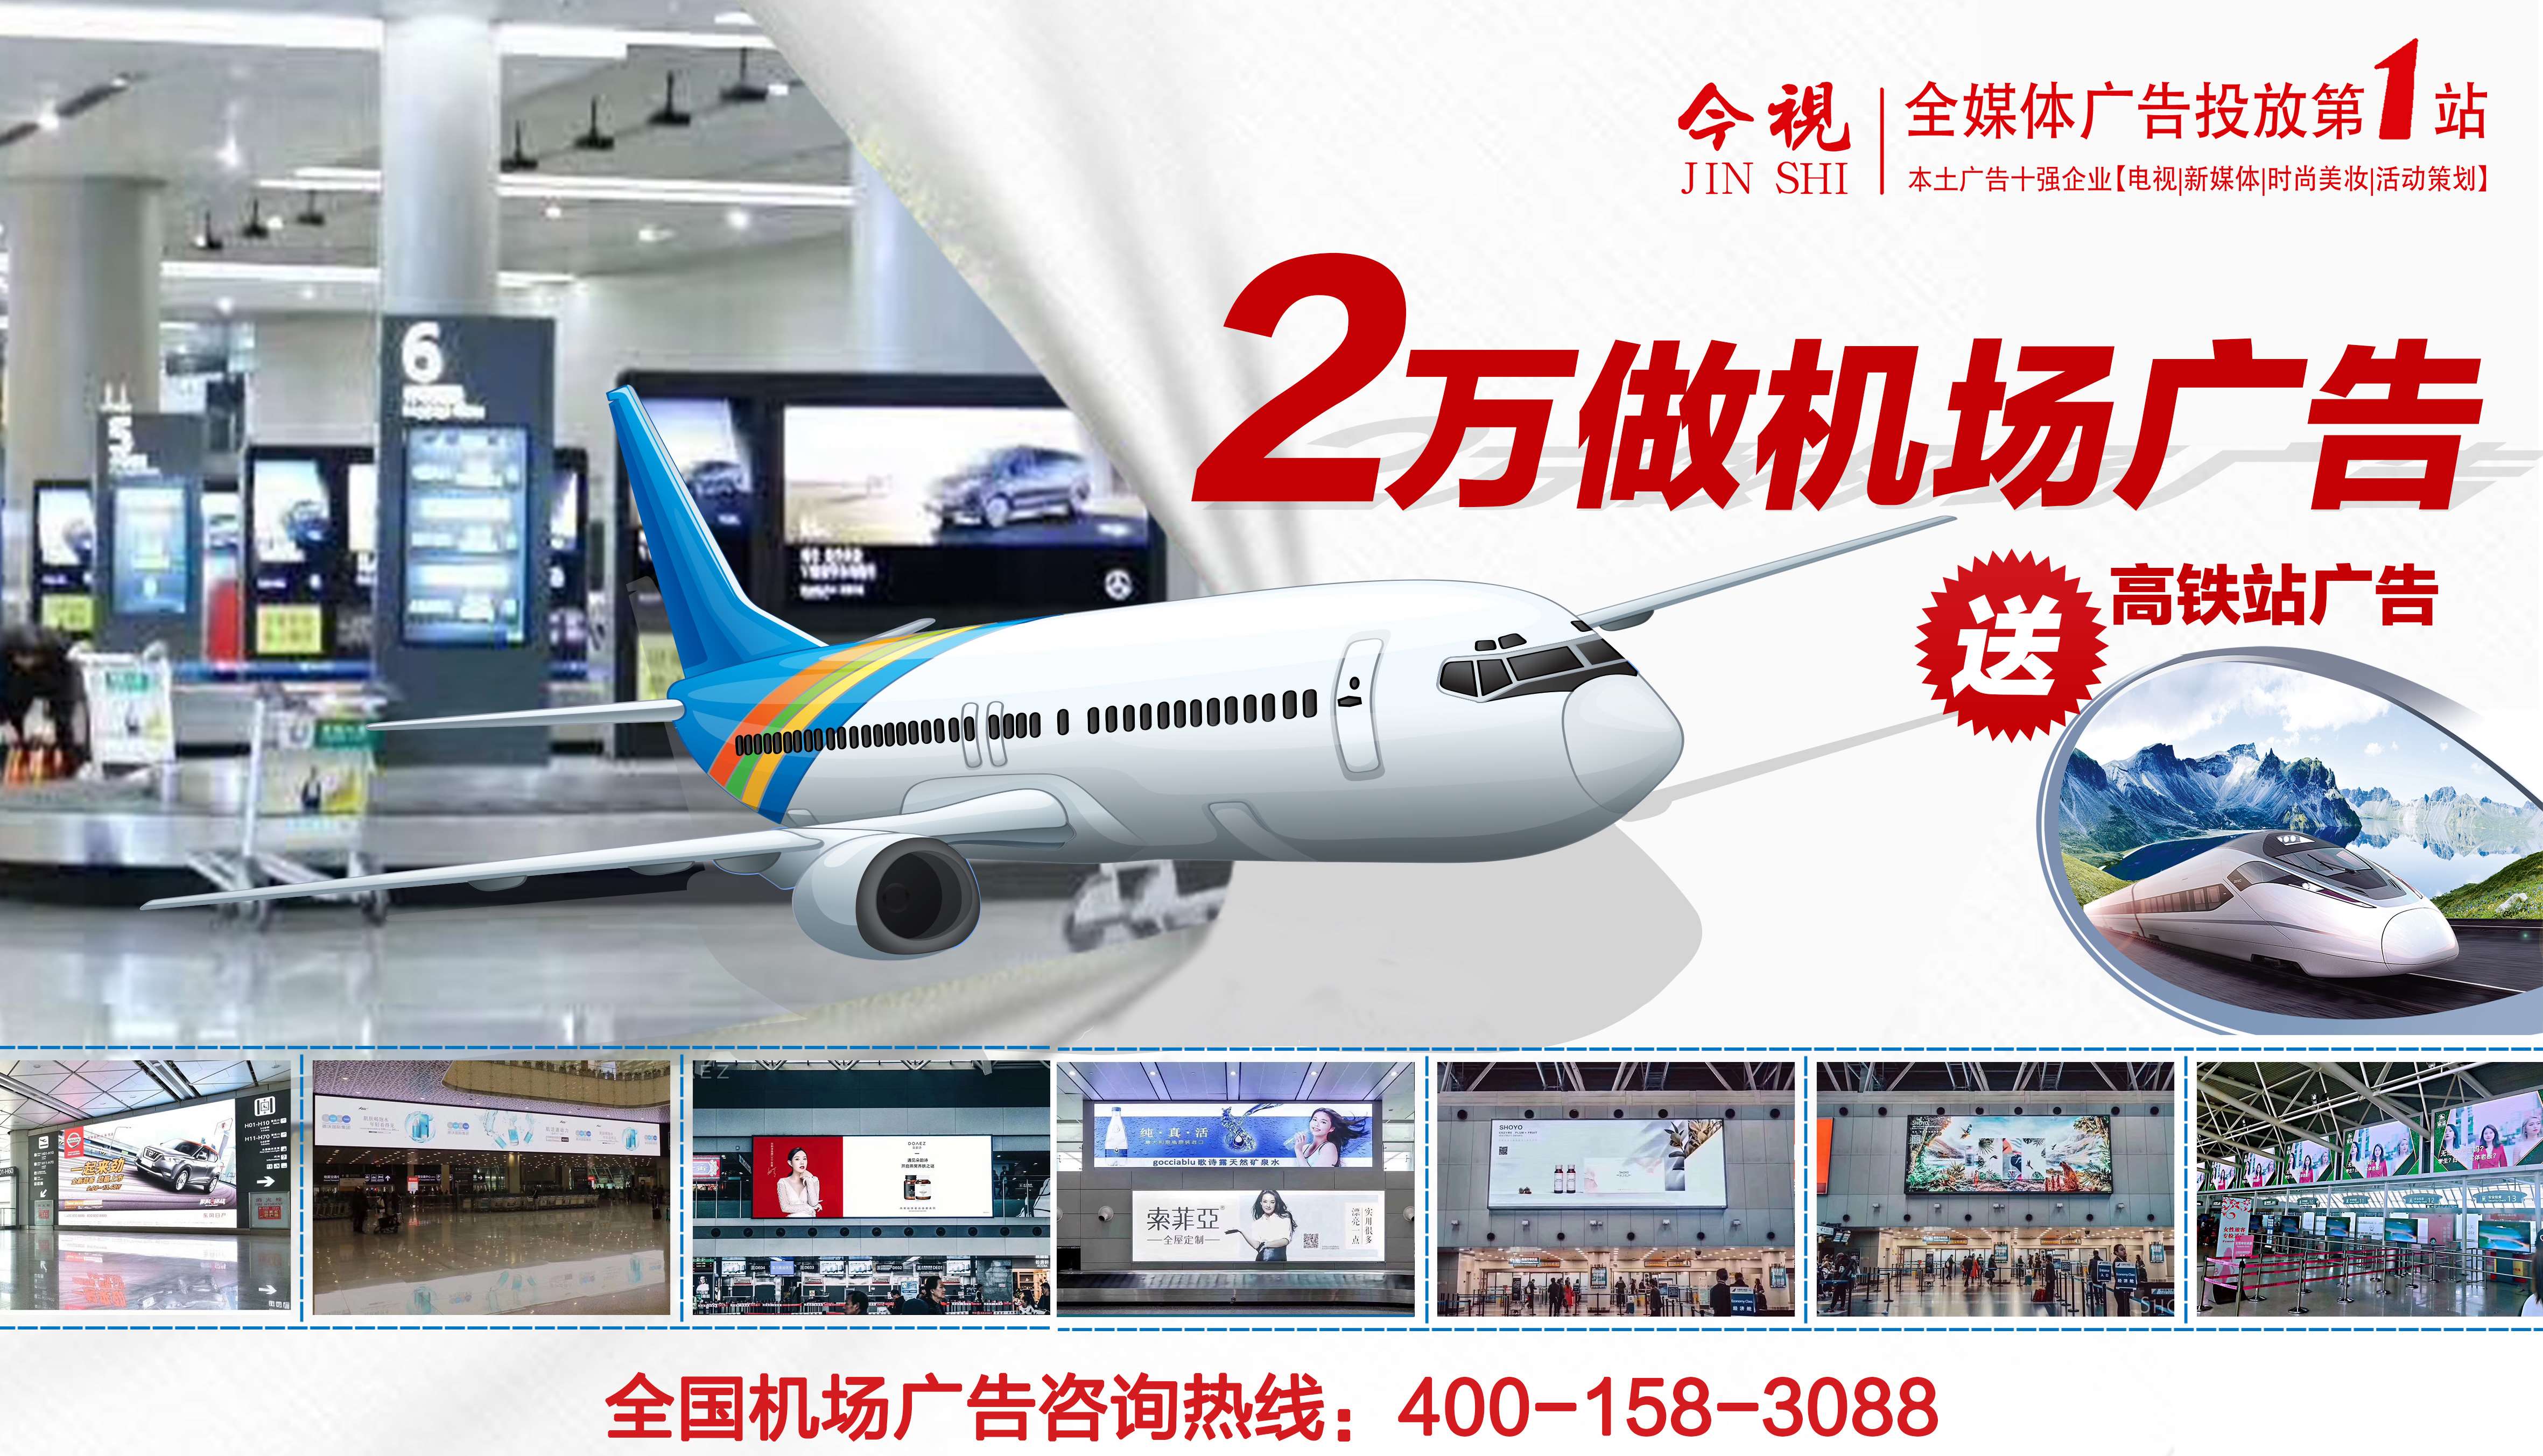 投放海南机场媒体广告、机票广告、登机牌广告、飞机广告就选广东今视传媒，广东今视广告投放热线：400-158-3088.